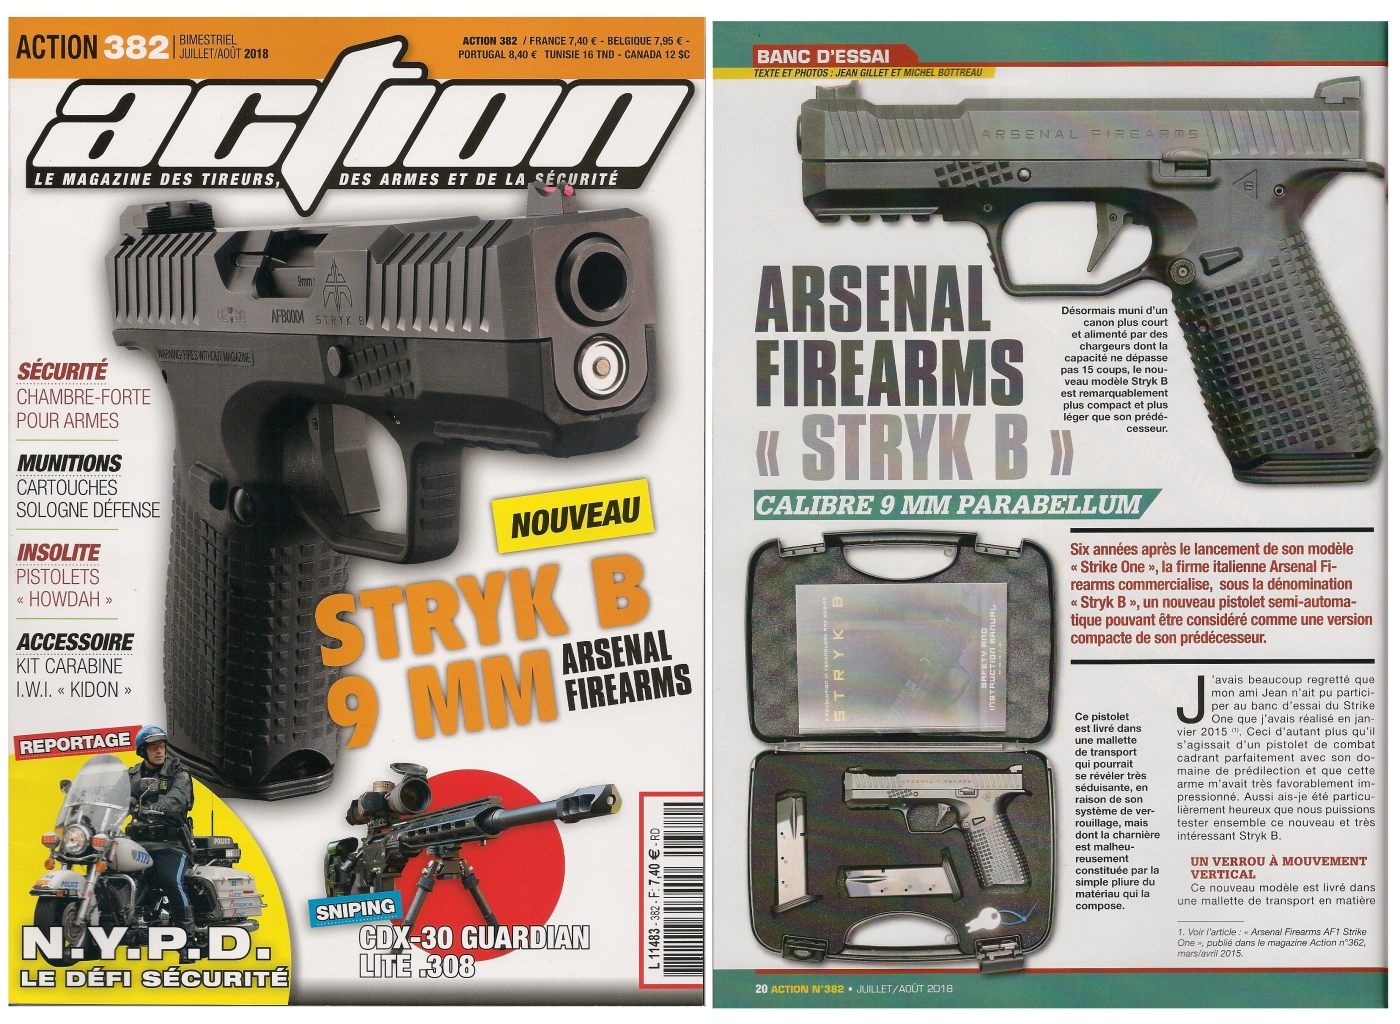 Le banc d’essai du pistolet Arsenal Firearms Styk B a été publié sur 6 pages dans le magazine Action n° 382 (juillet/août 2018). 